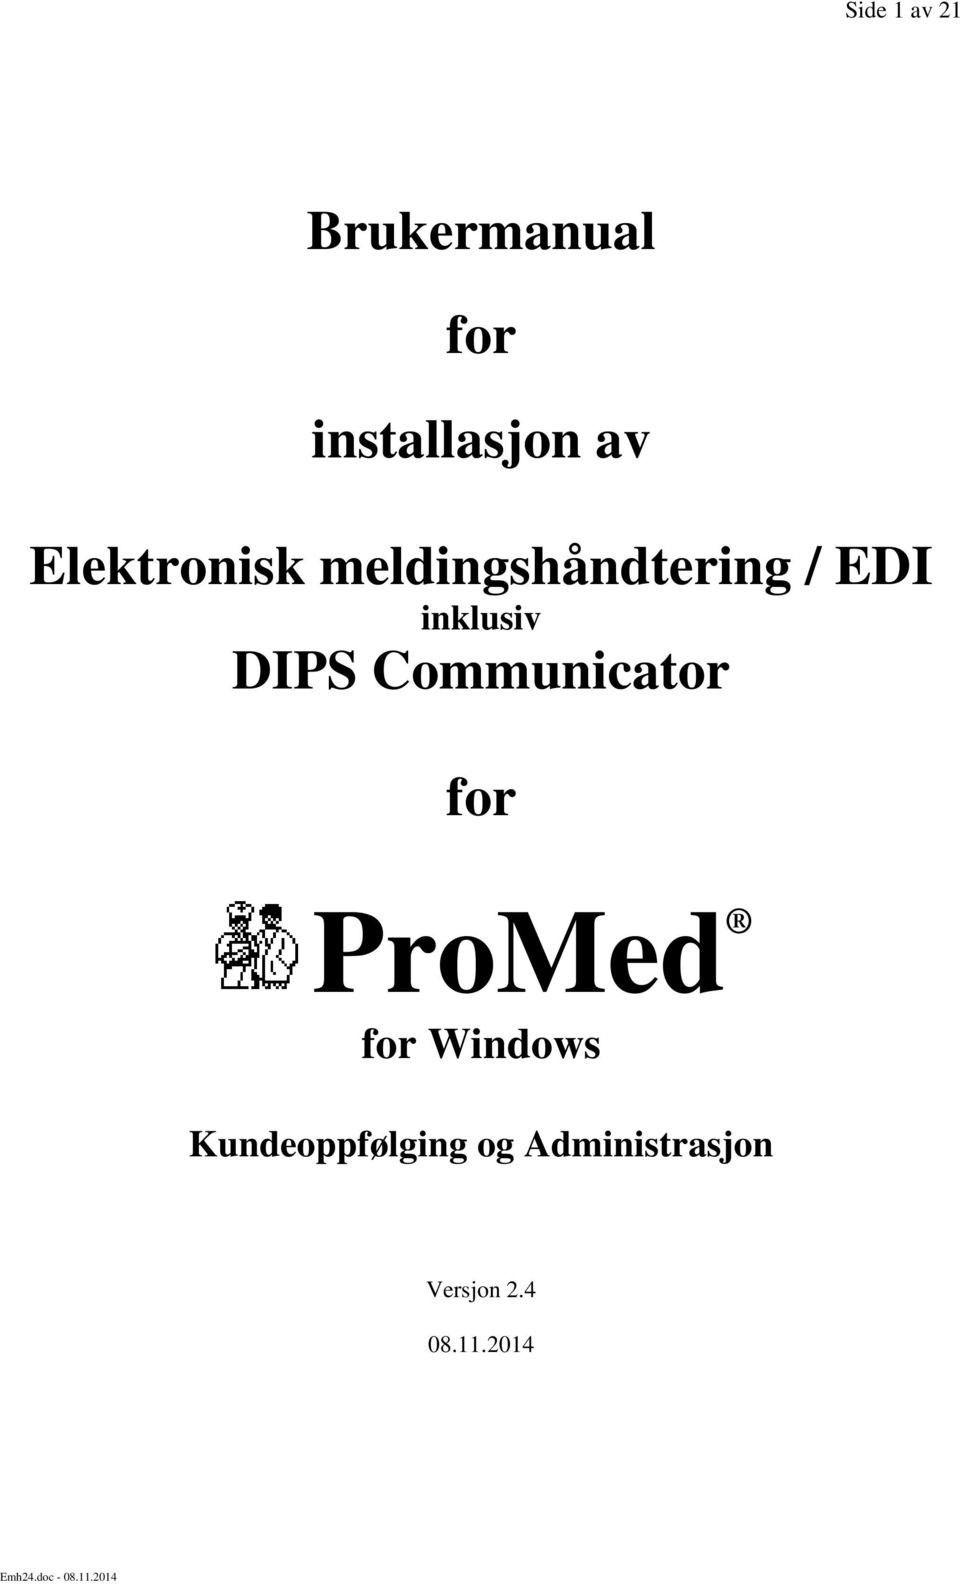 DIPS Communicator for ProMed for Windows